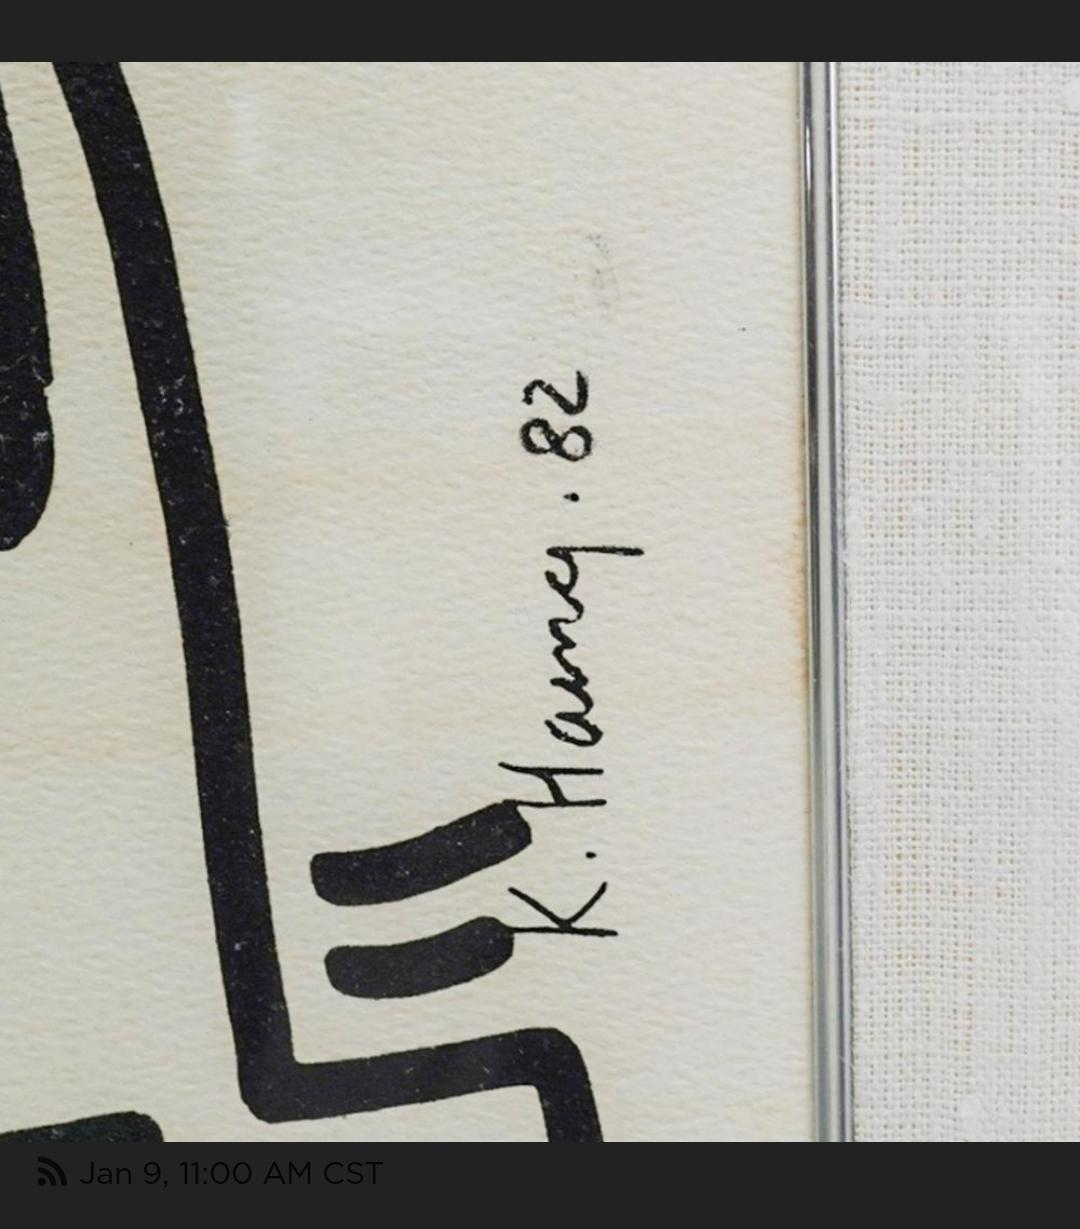 BESCHREIBUNG: (2 Pc) Paar gerahmte Vintage Keith
Haring-Siebdrucke auf Papier. Enthält:
(1 St.) Keith Haring Siebdruck auf Papier. 